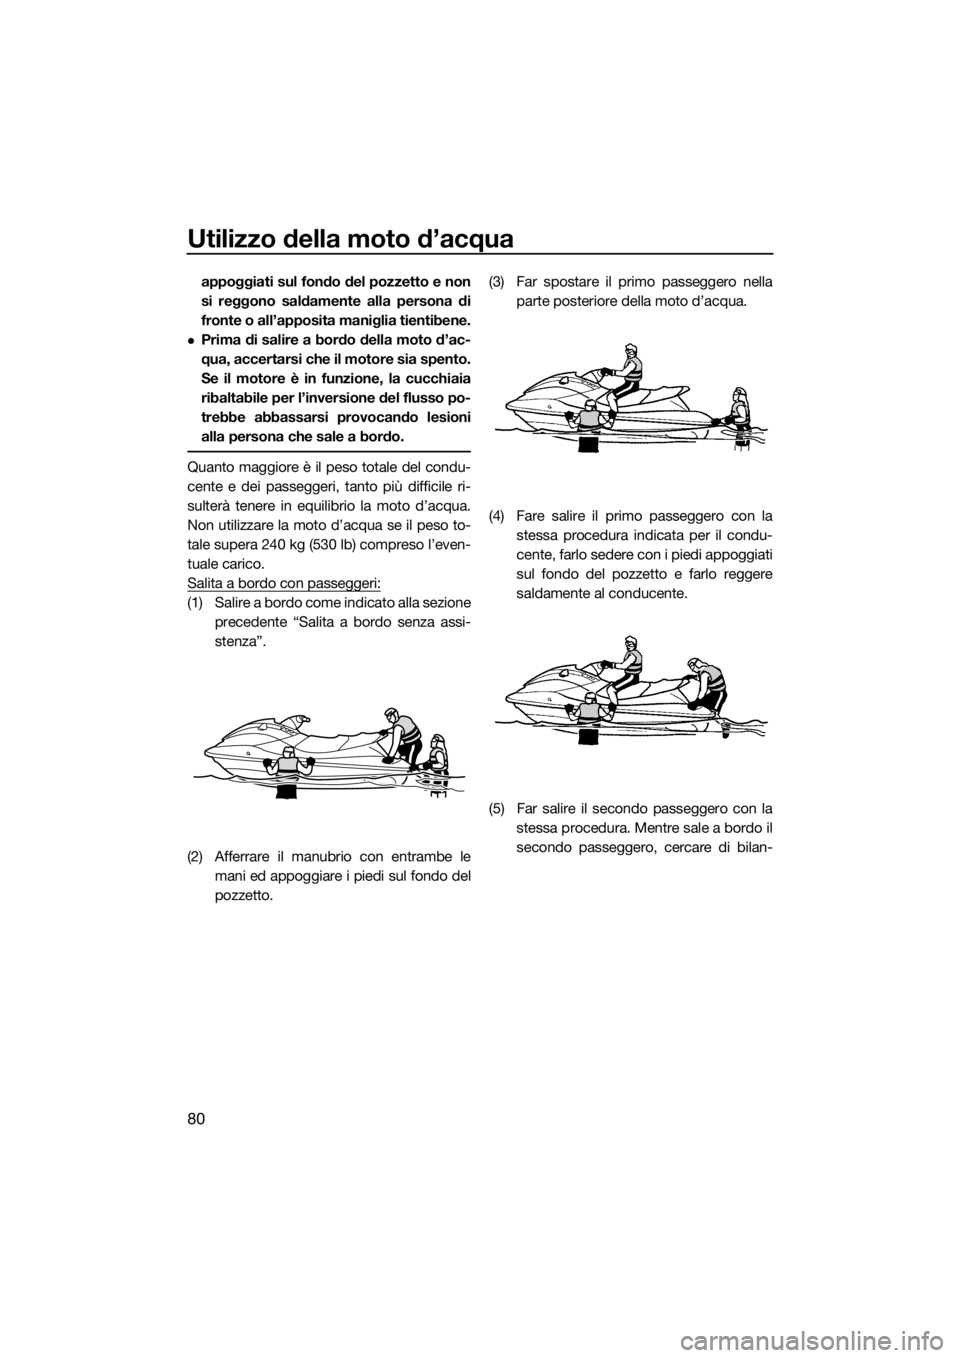 YAMAHA VX 2019  Manuale duso (in Italian) Utilizzo della moto d’acqua
80
appoggiati sul fondo del pozzetto e non
si reggono saldamente alla persona di
fronte o all’apposita maniglia tientibene.
Prima di salire a bordo della moto d’ac